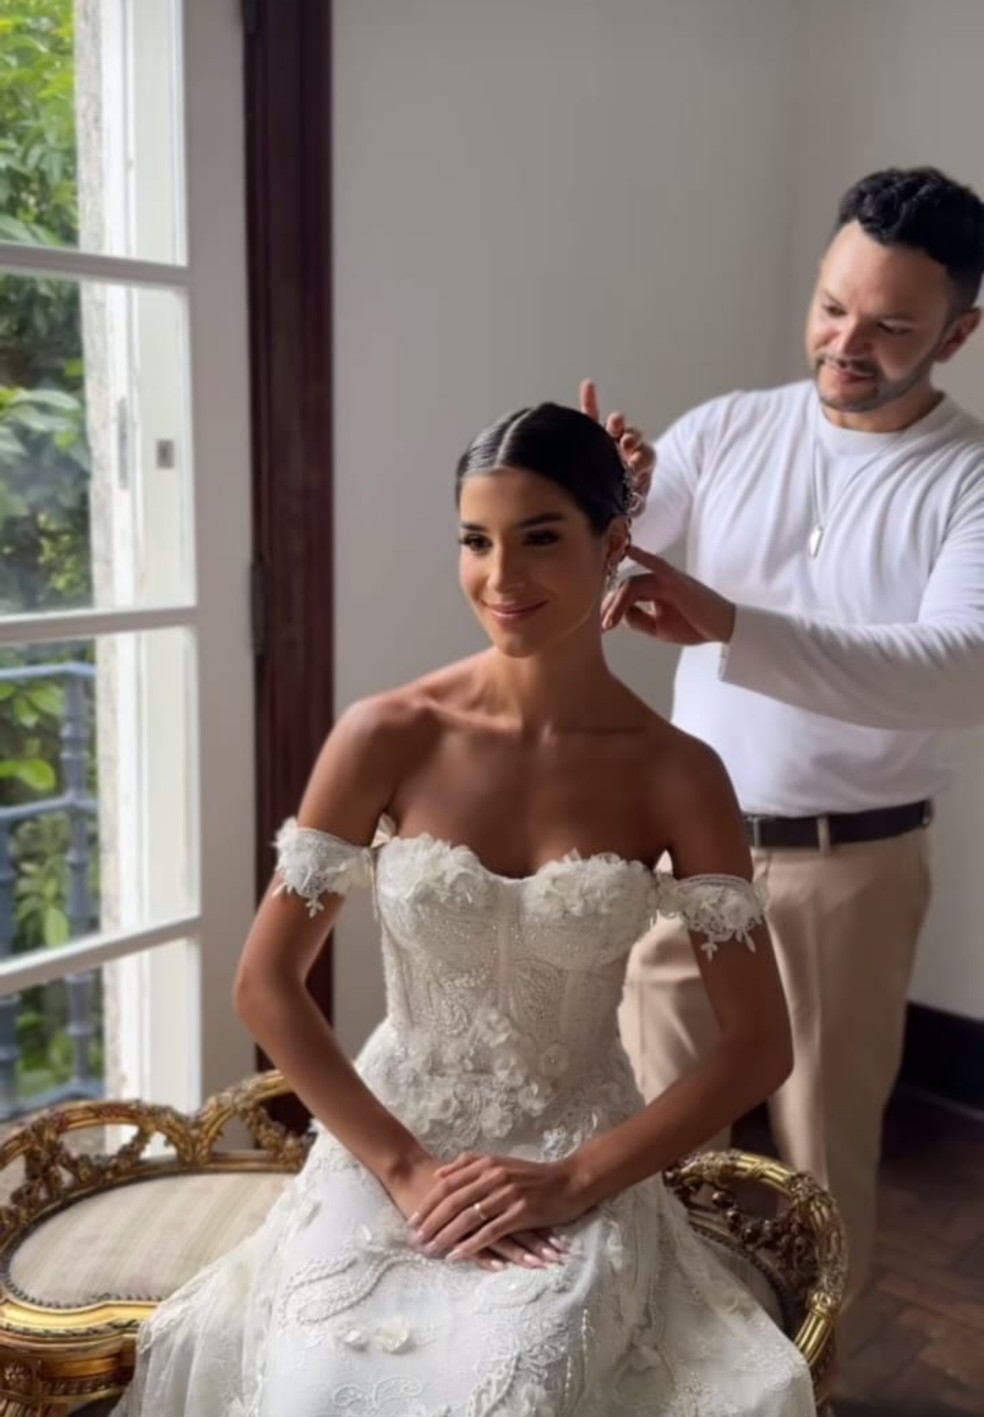 Miss Brasil 2019, Julia Horta elegeu vestido de noiva romântico para casamento — Foto: Reprodução Instagram